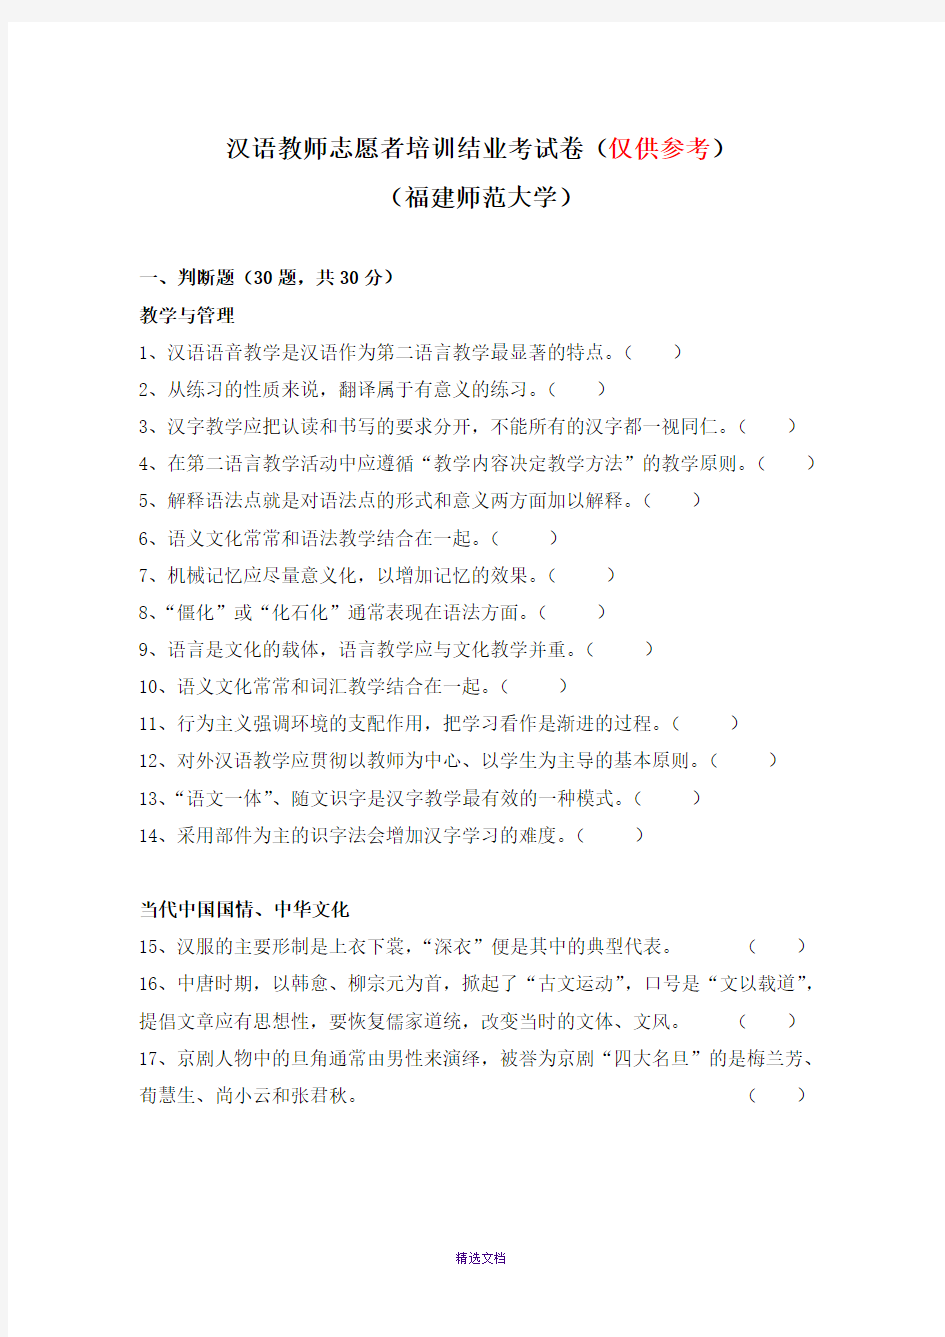 仅供参考----汉语教师志愿者培训结业考试(福建师大)-2